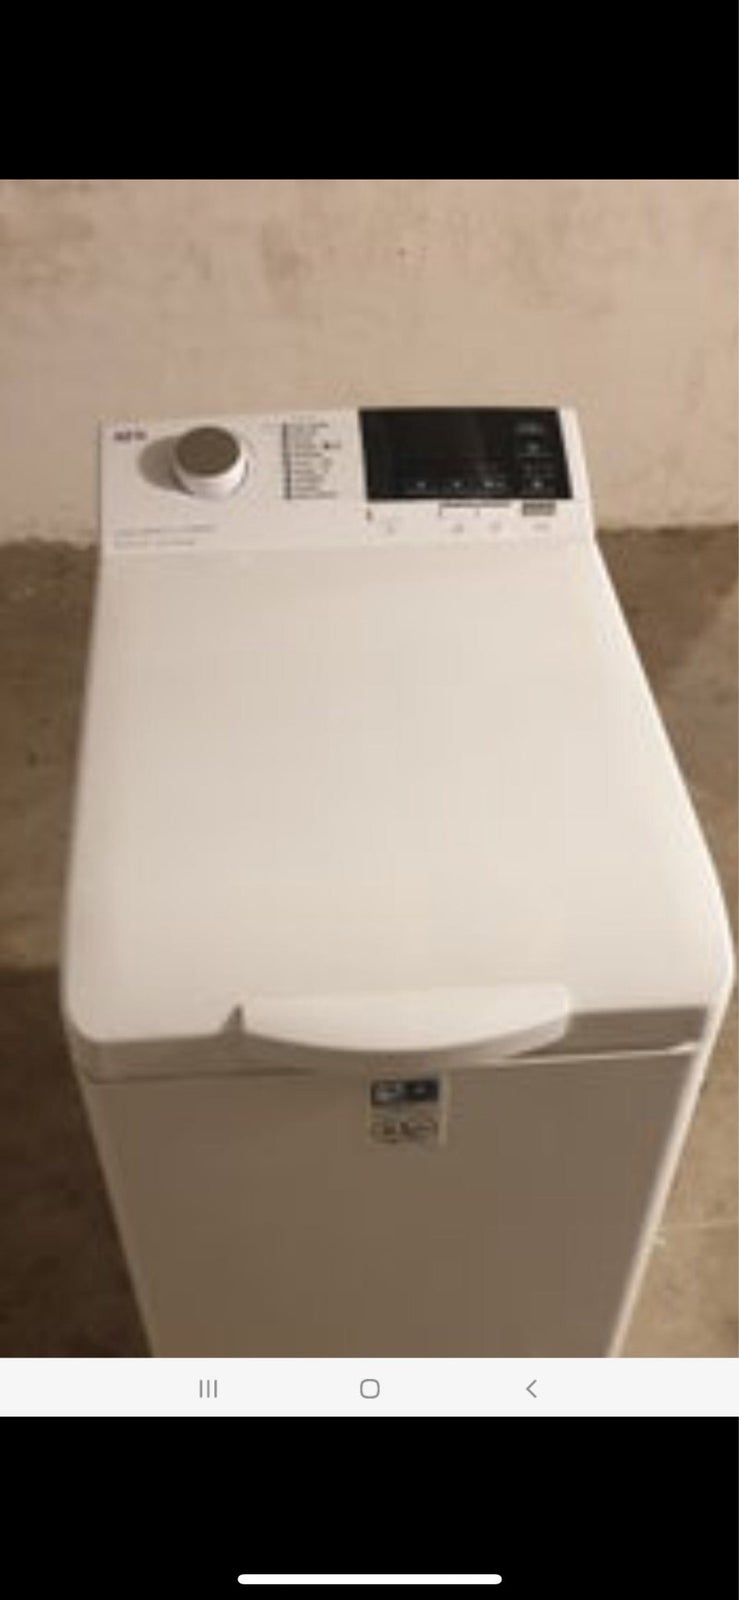 AEG vaskemaskine, Serie 6000, topbetjent